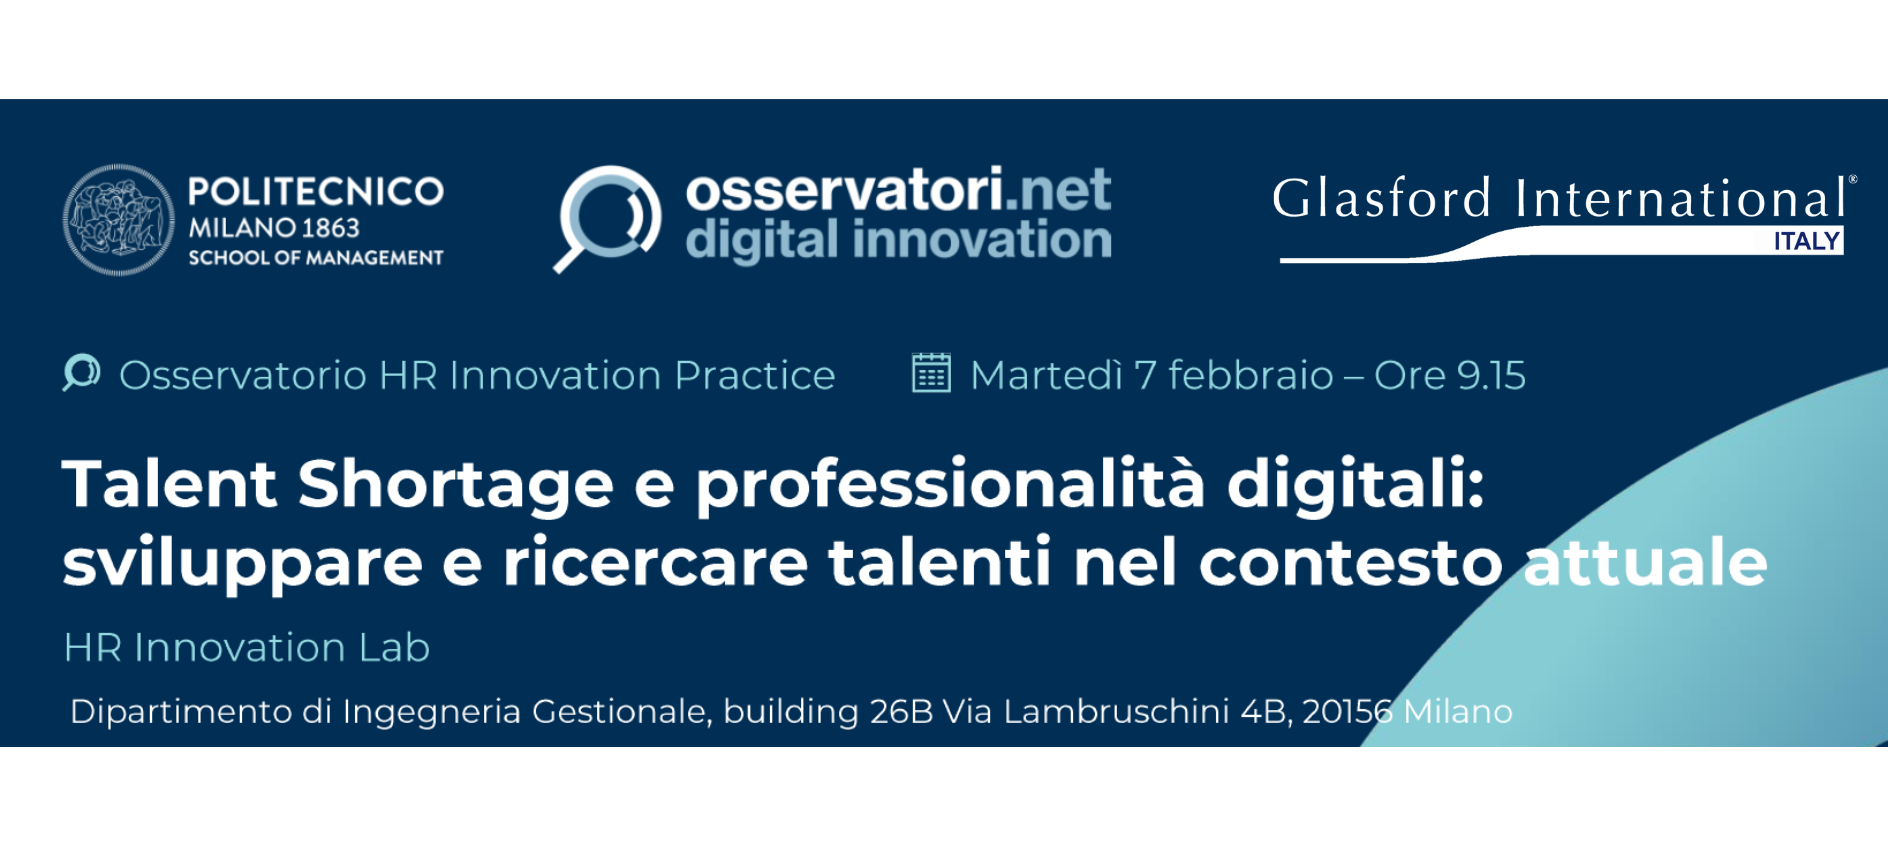 Talent Shortage e professionalità digitali. Sviluppare e ricercare talenti nel contesto attuale